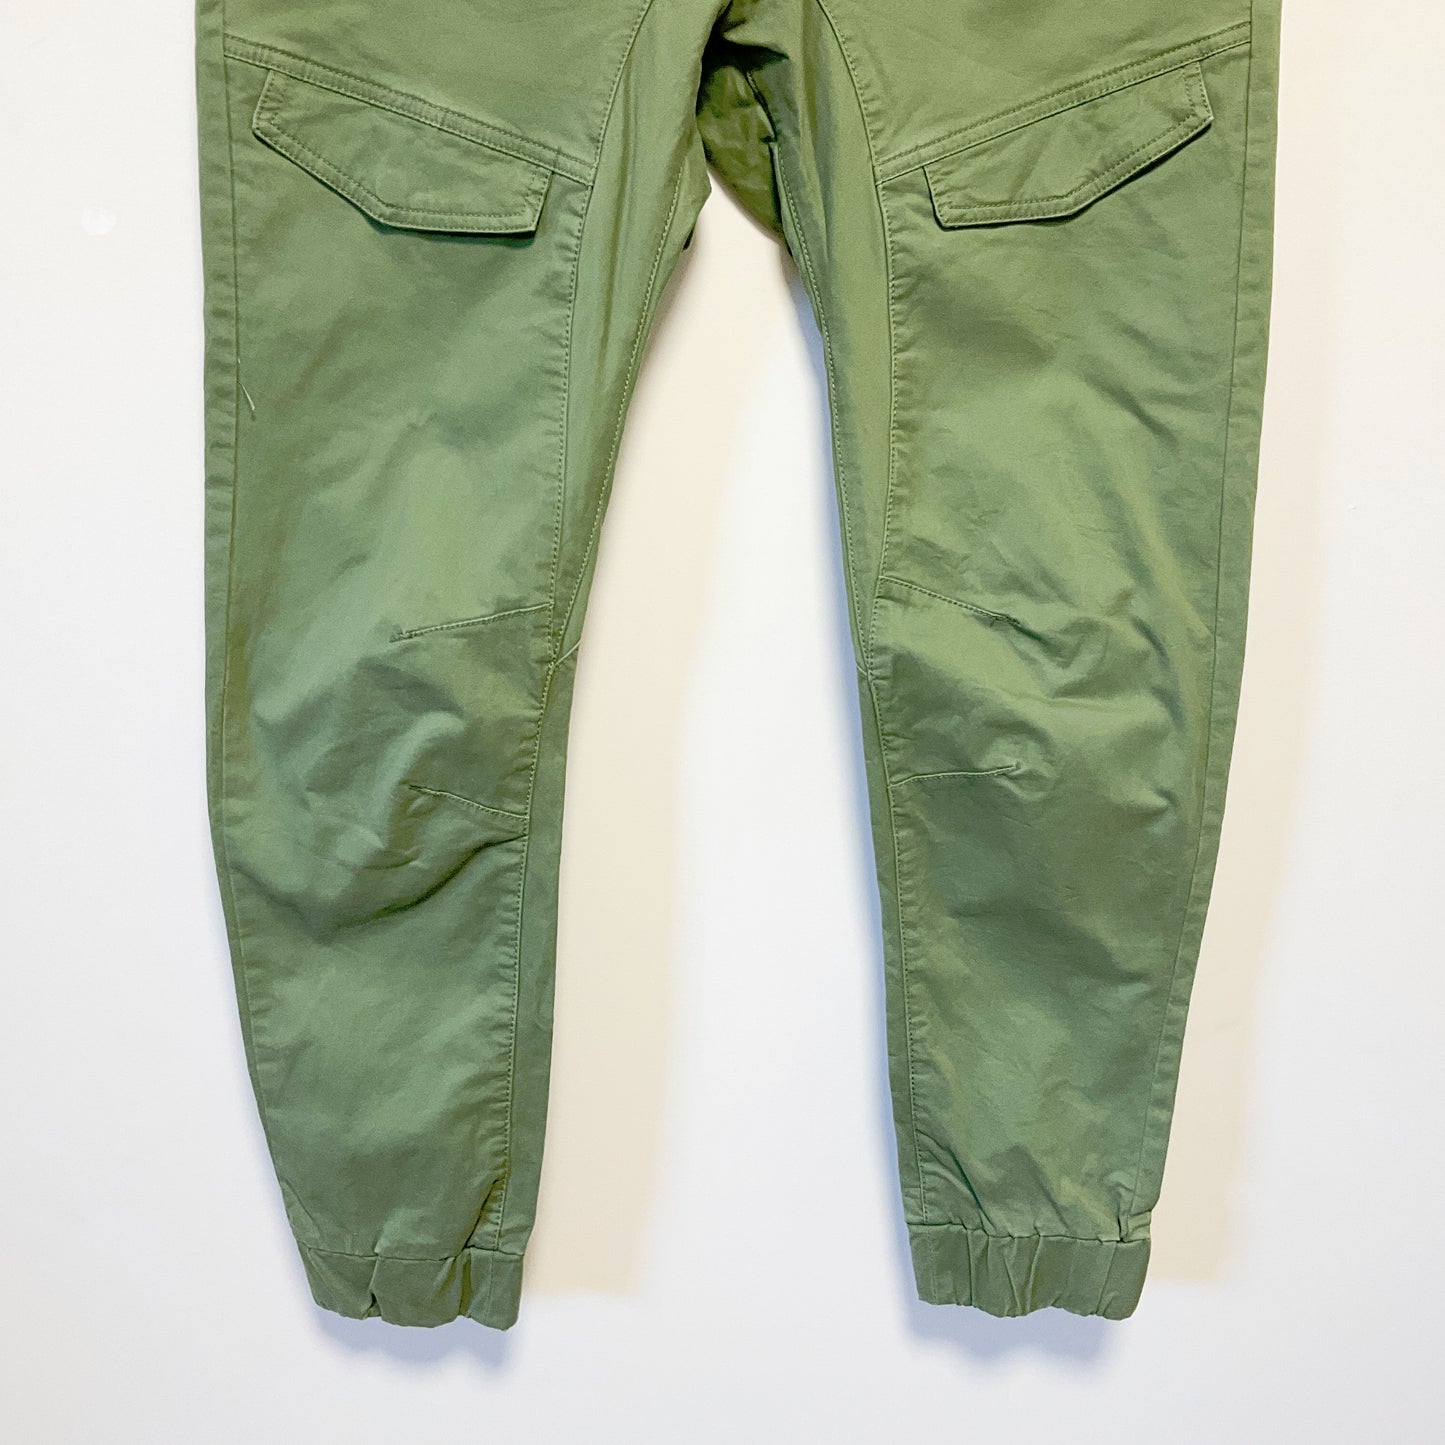 Nena & Pasadena - Men's Green Jeans